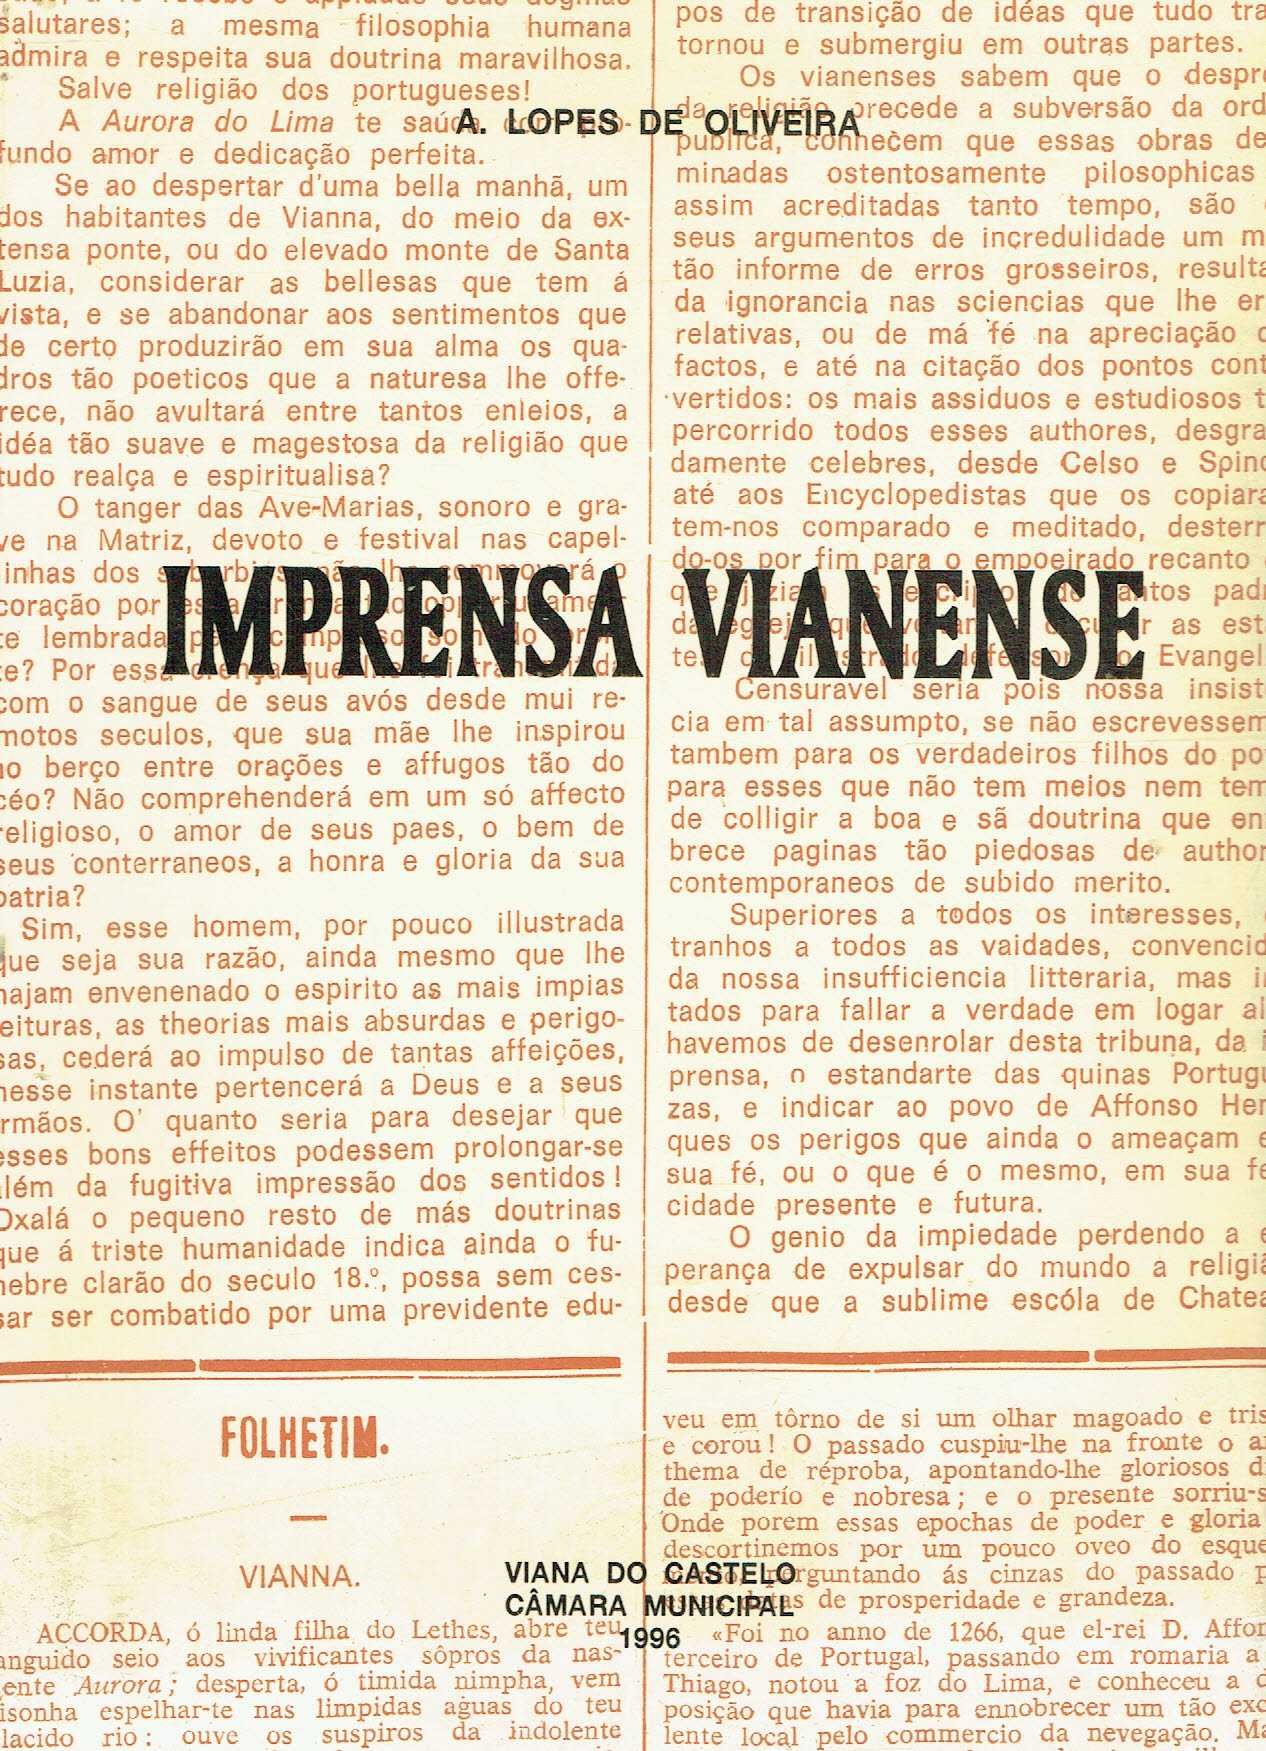 1051
	
Imprensa vianense  
de A. Lopes de Oliveira.